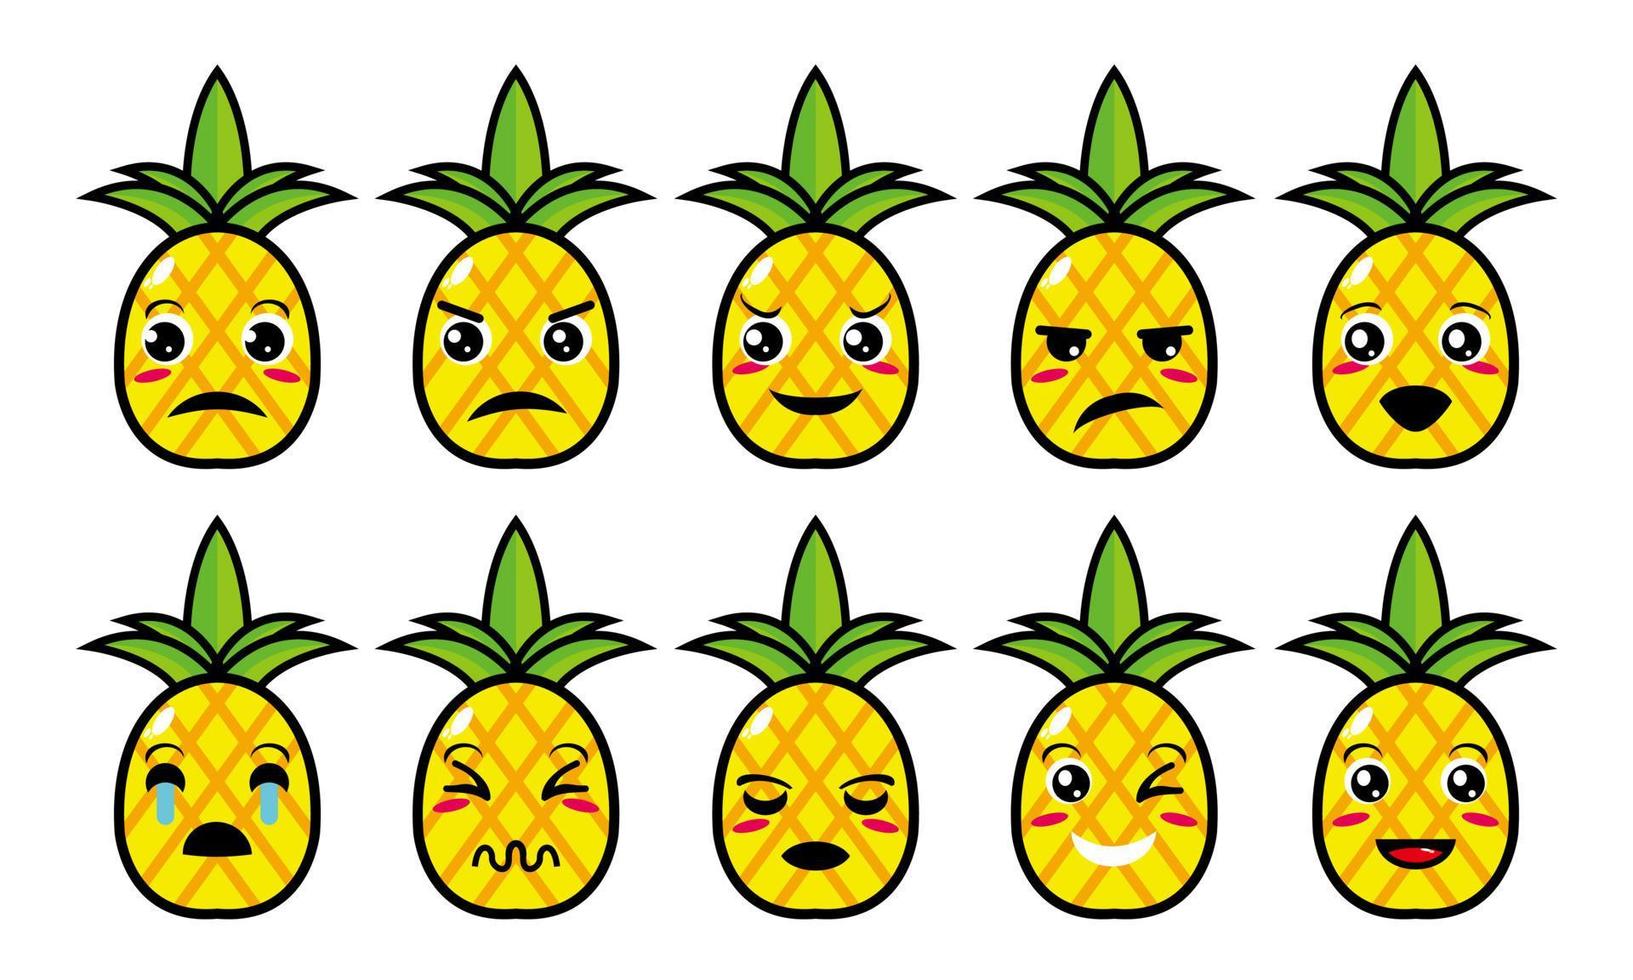 carino sorridente divertente set di ananas collection.vector piatto cartone animato faccia personaggio mascotte illustrazione .isolato su sfondo bianco vettore